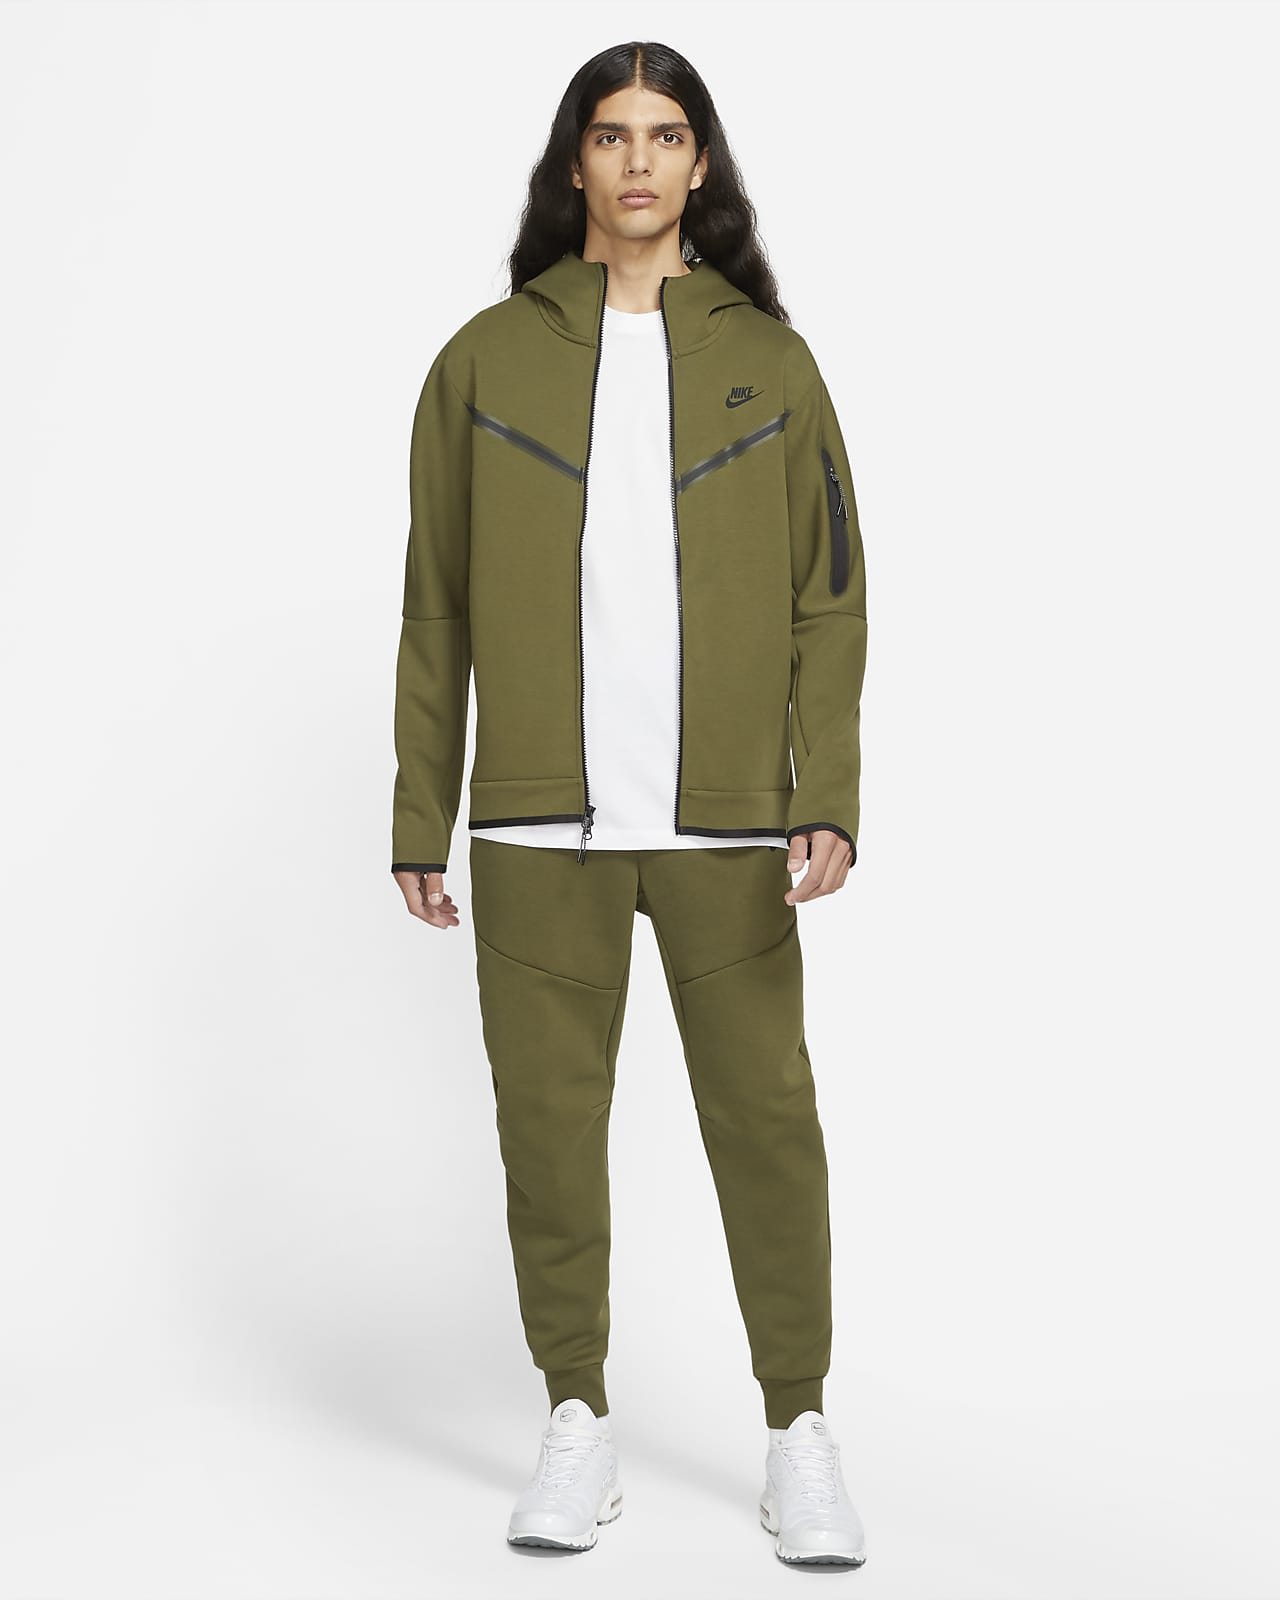 Nike Sportswear Tech Fleece Graphic Full-Zip Hoodie Grey